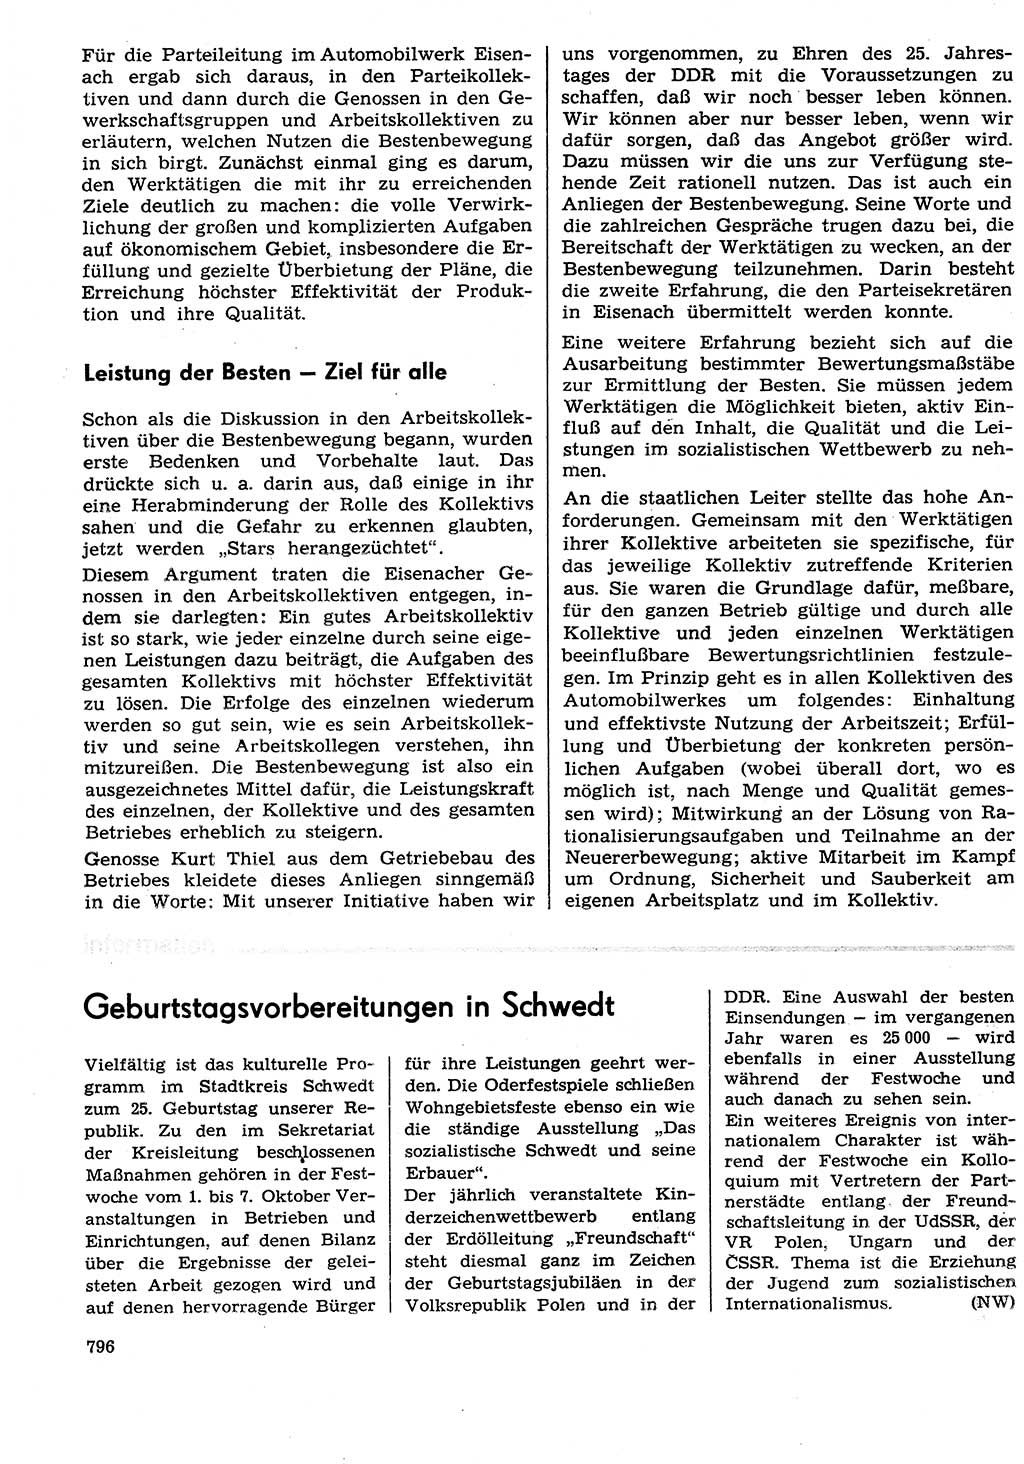 Neuer Weg (NW), Organ des Zentralkomitees (ZK) der SED (Sozialistische Einheitspartei Deutschlands) für Fragen des Parteilebens, 29. Jahrgang [Deutsche Demokratische Republik (DDR)] 1974, Seite 796 (NW ZK SED DDR 1974, S. 796)